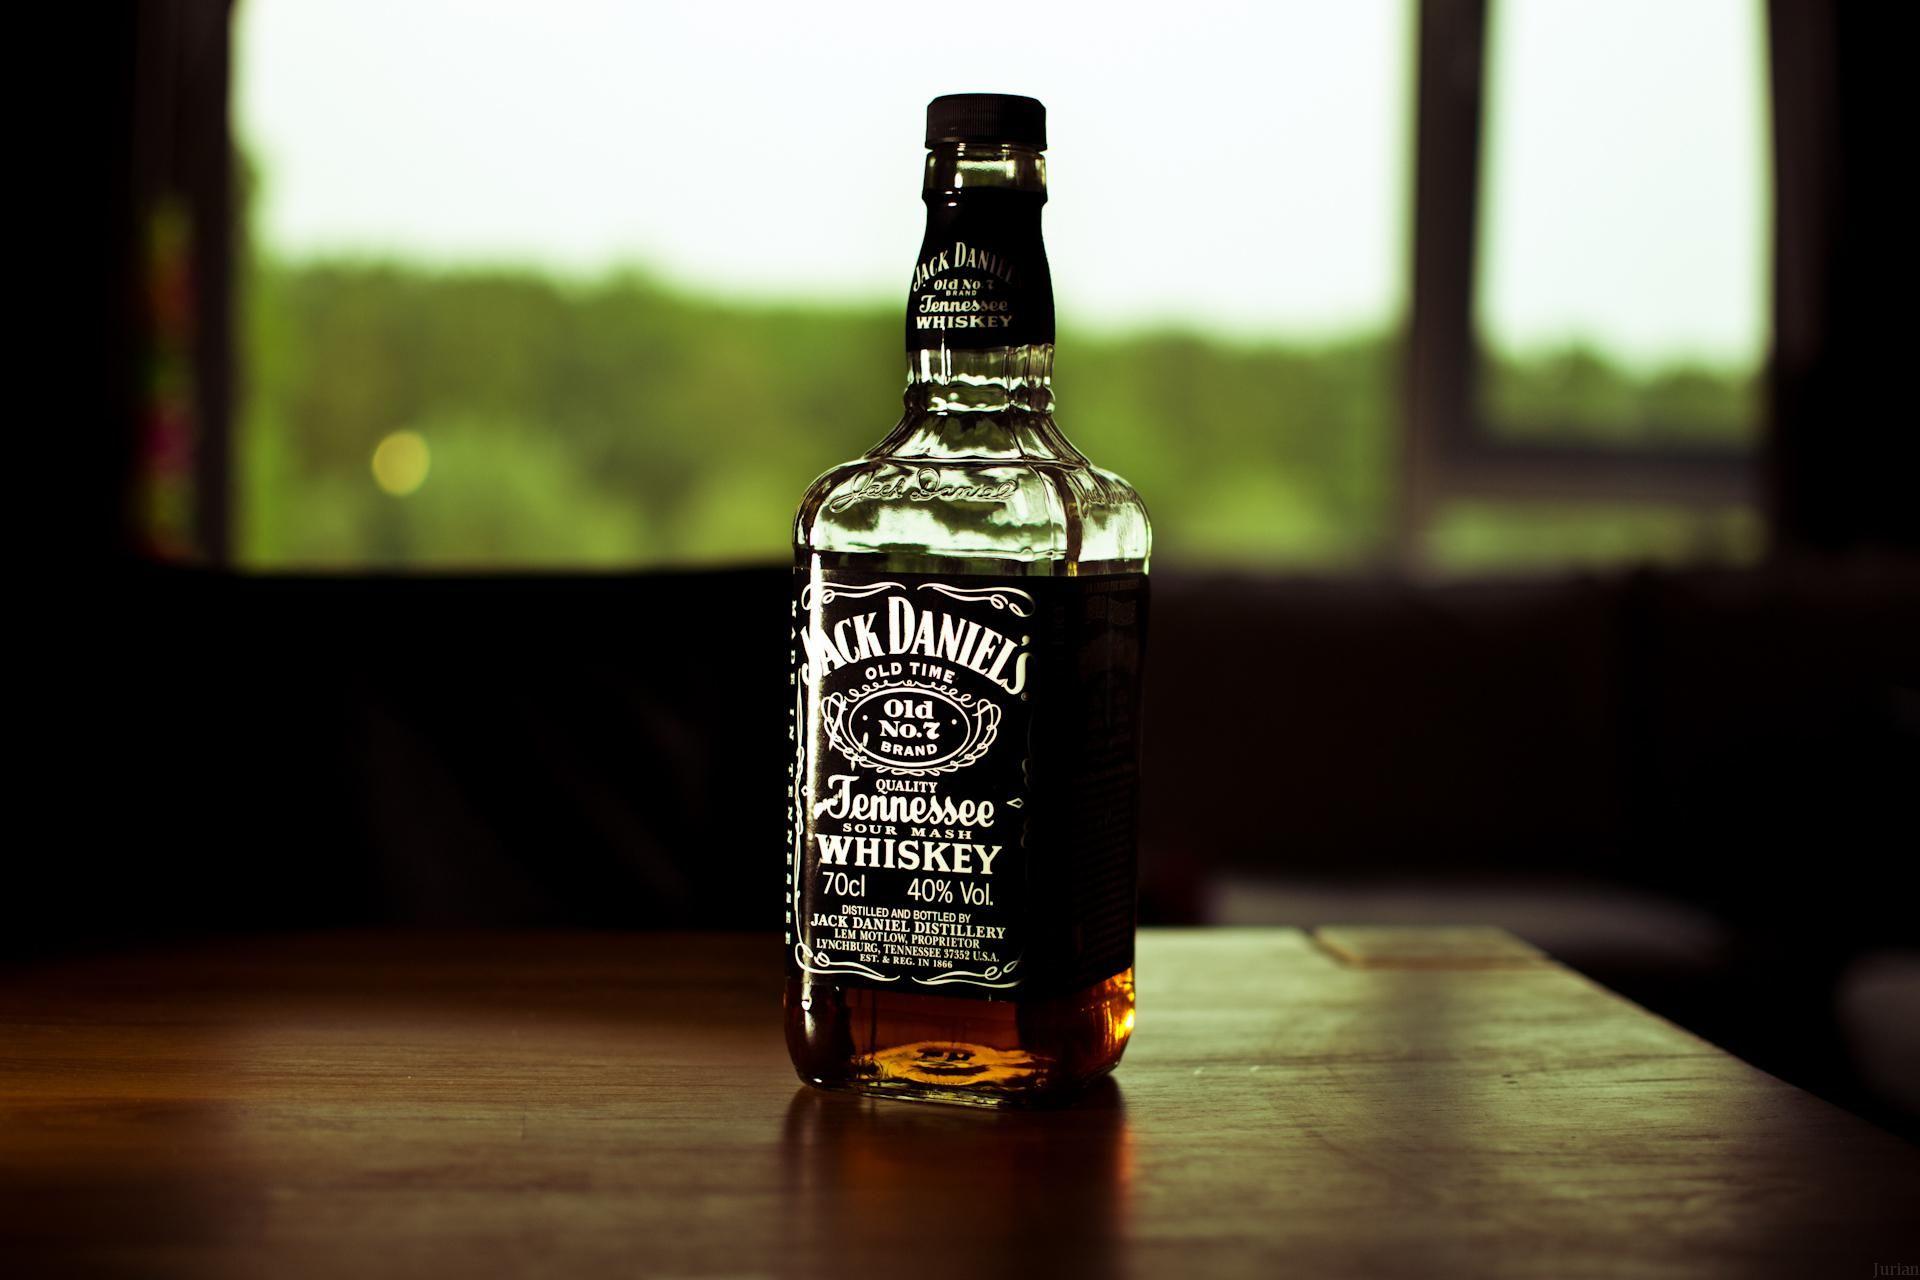 HD Drinks Jack Daniels Bottle Whiskey HD 1080p Wallpaper. Download